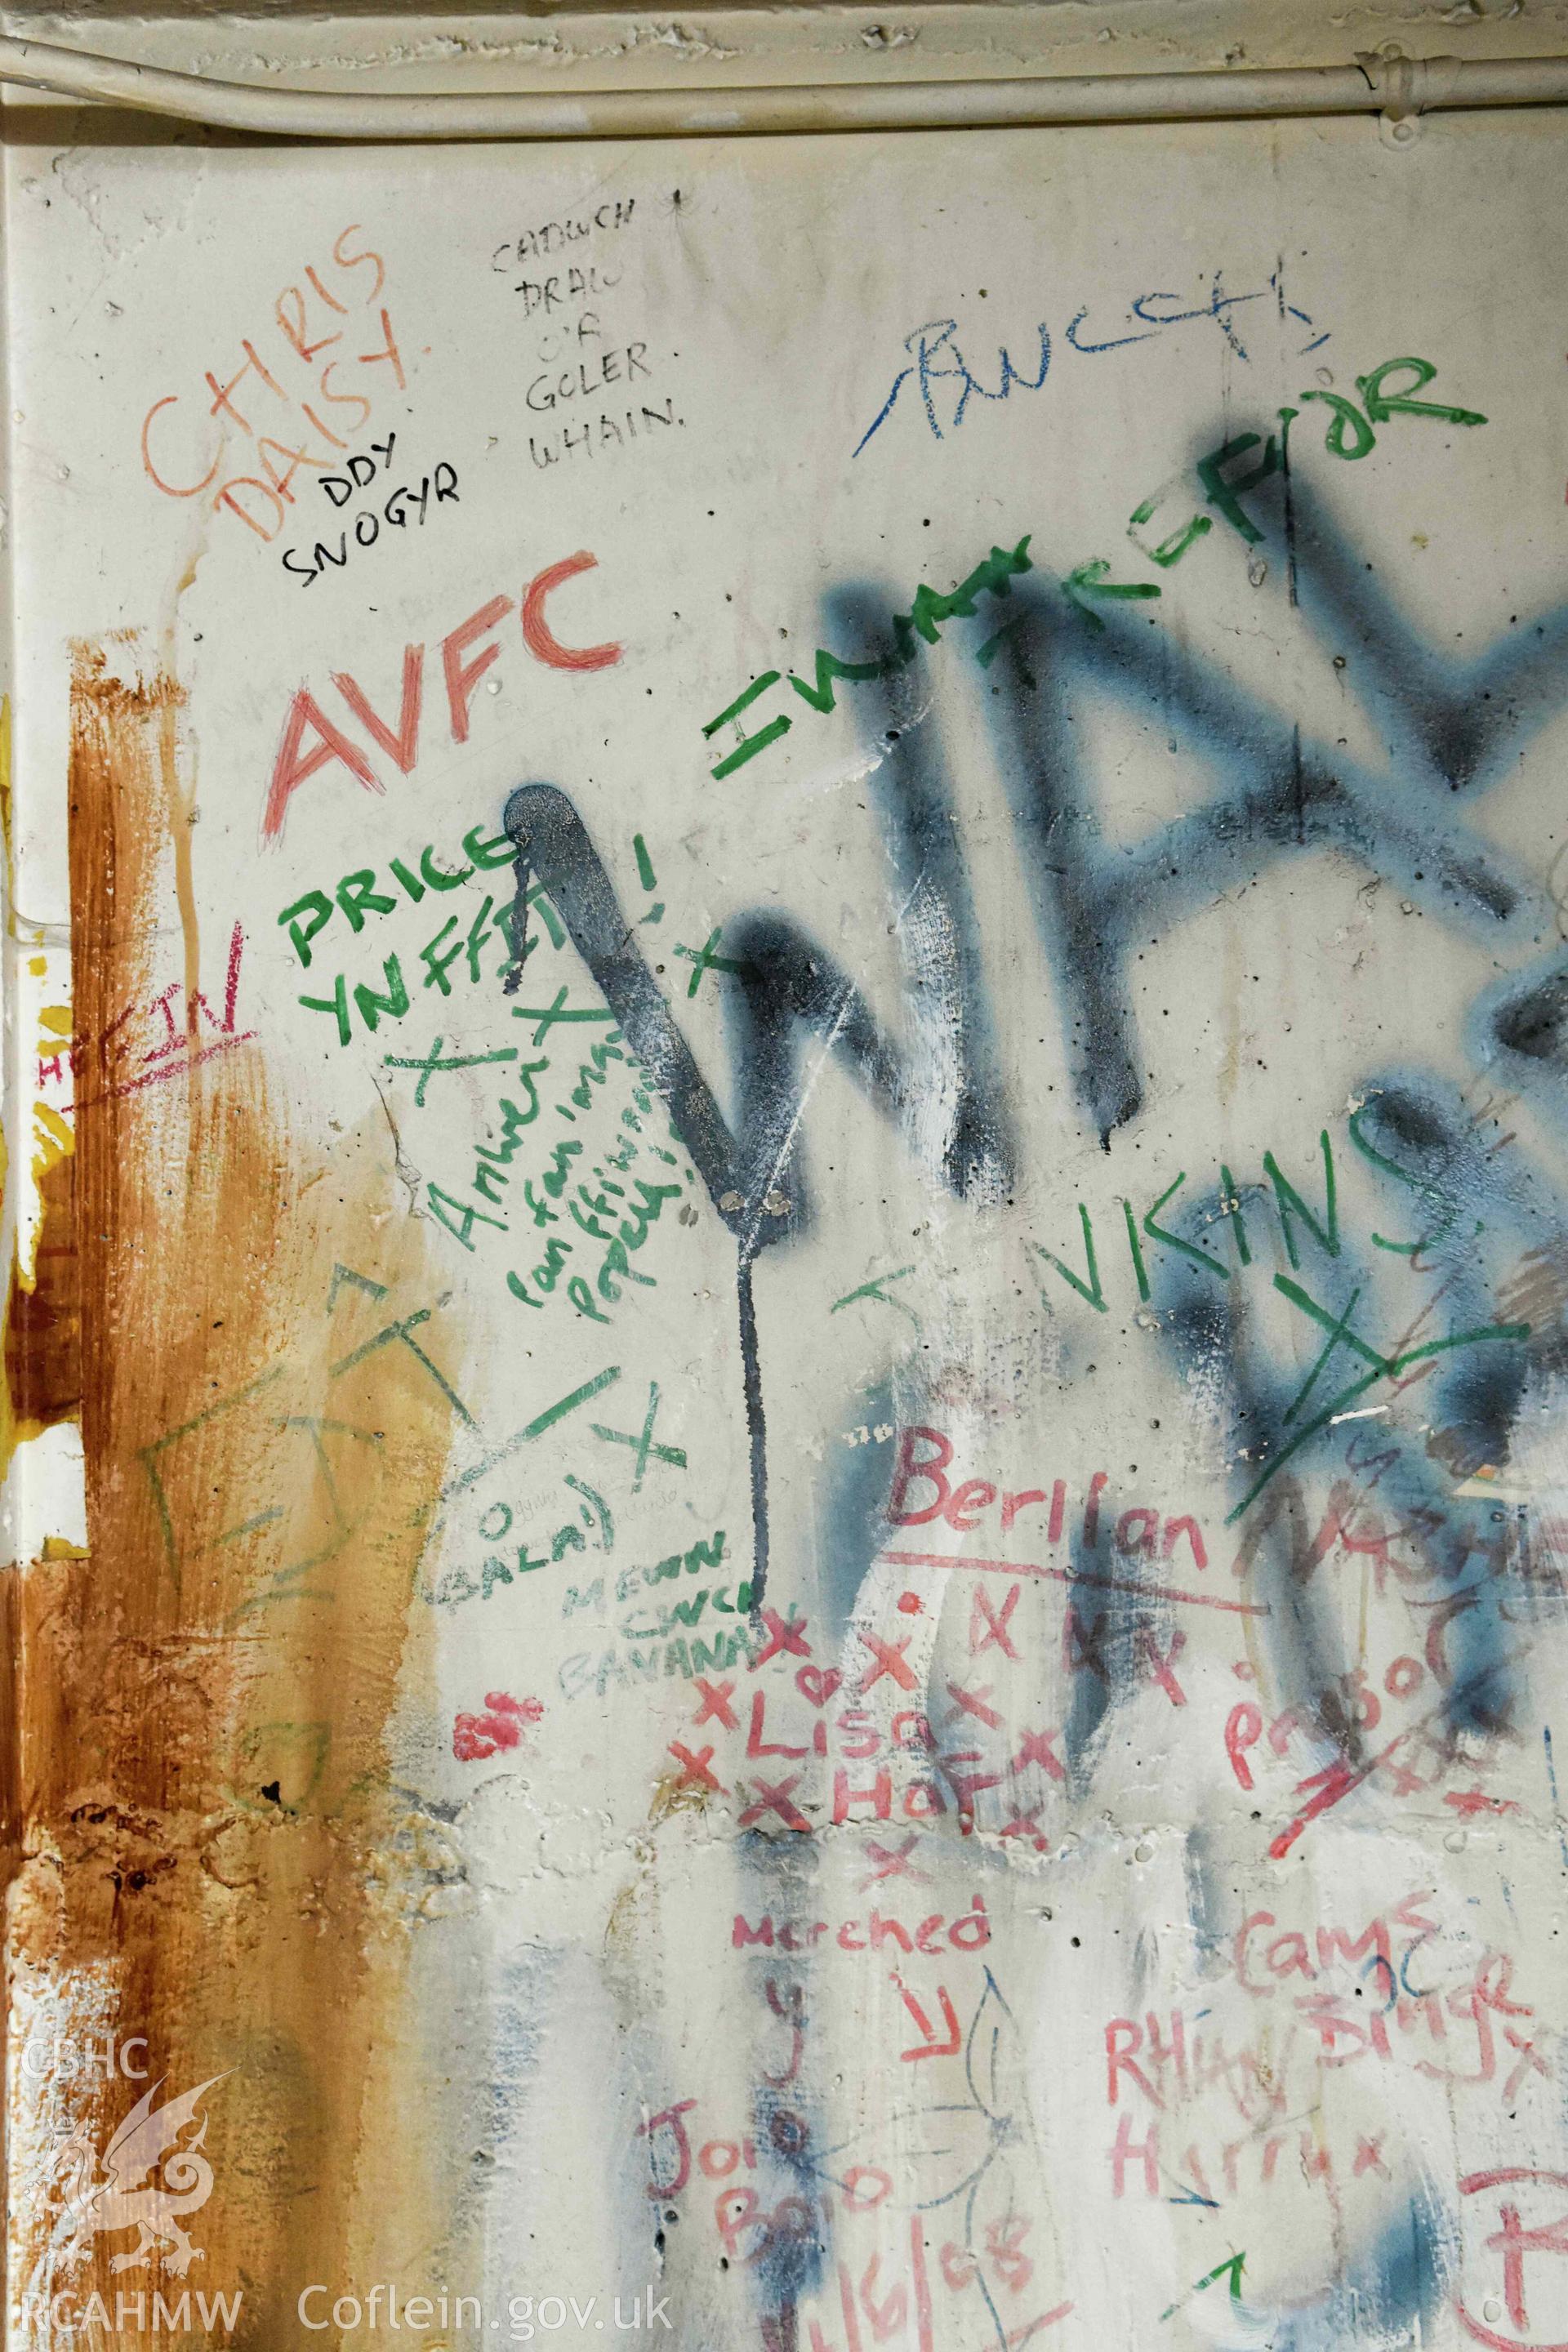 Basement bar 'wal graffitti'.